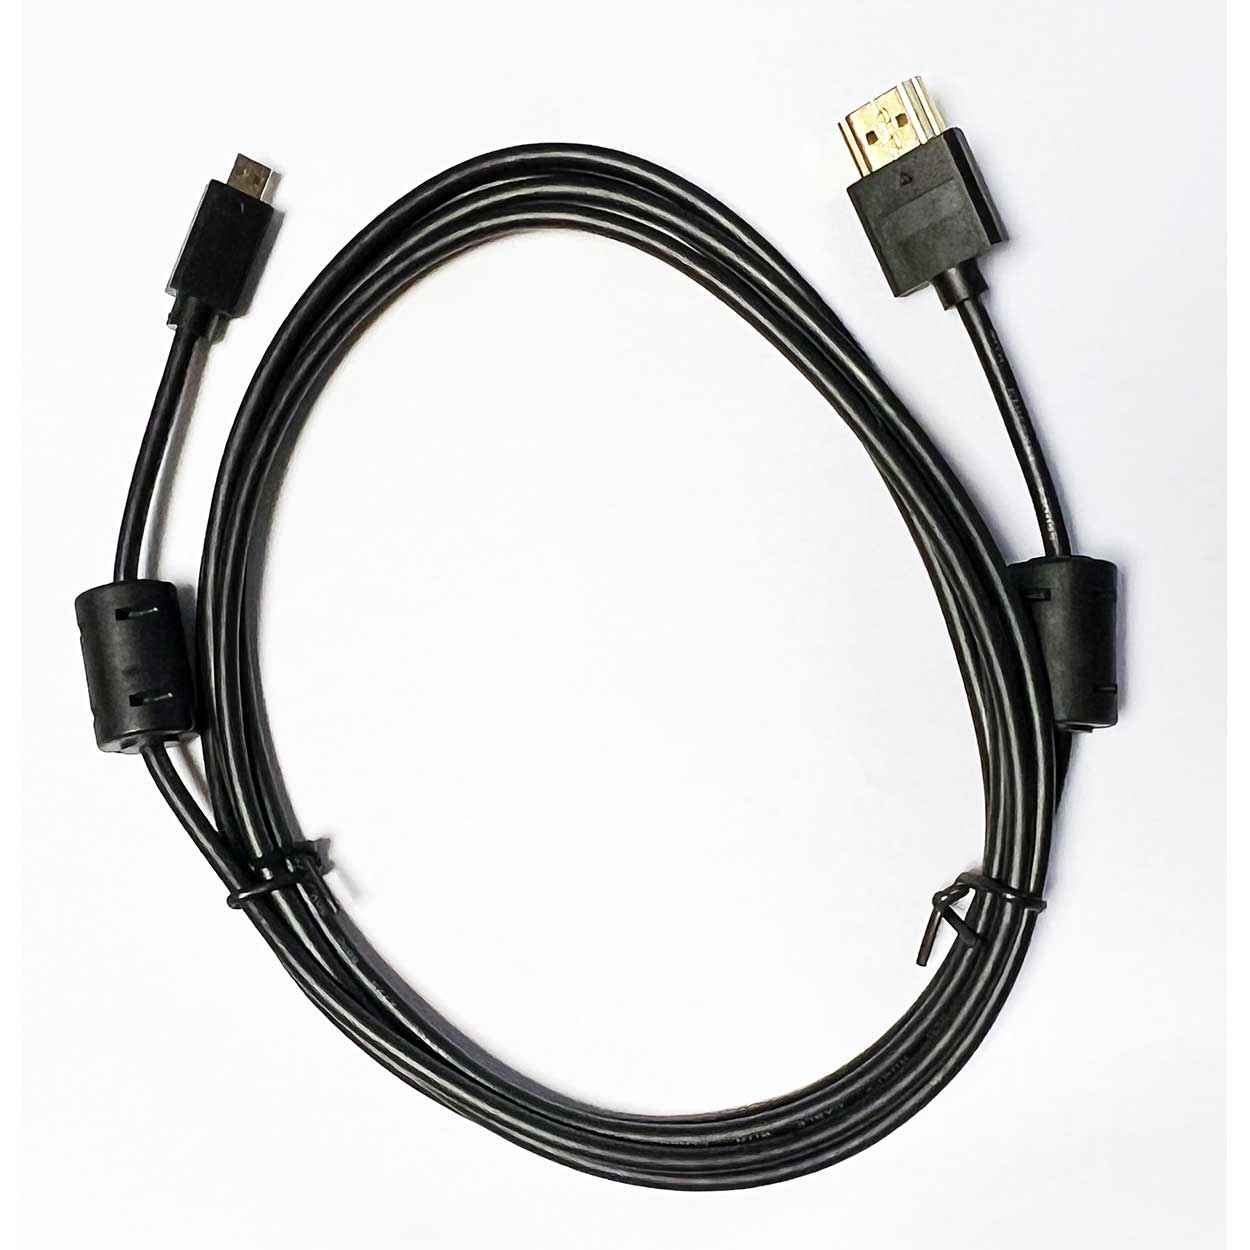 Eschenbach Smartlux Digital HDMI Kabel (für Modell 16502)